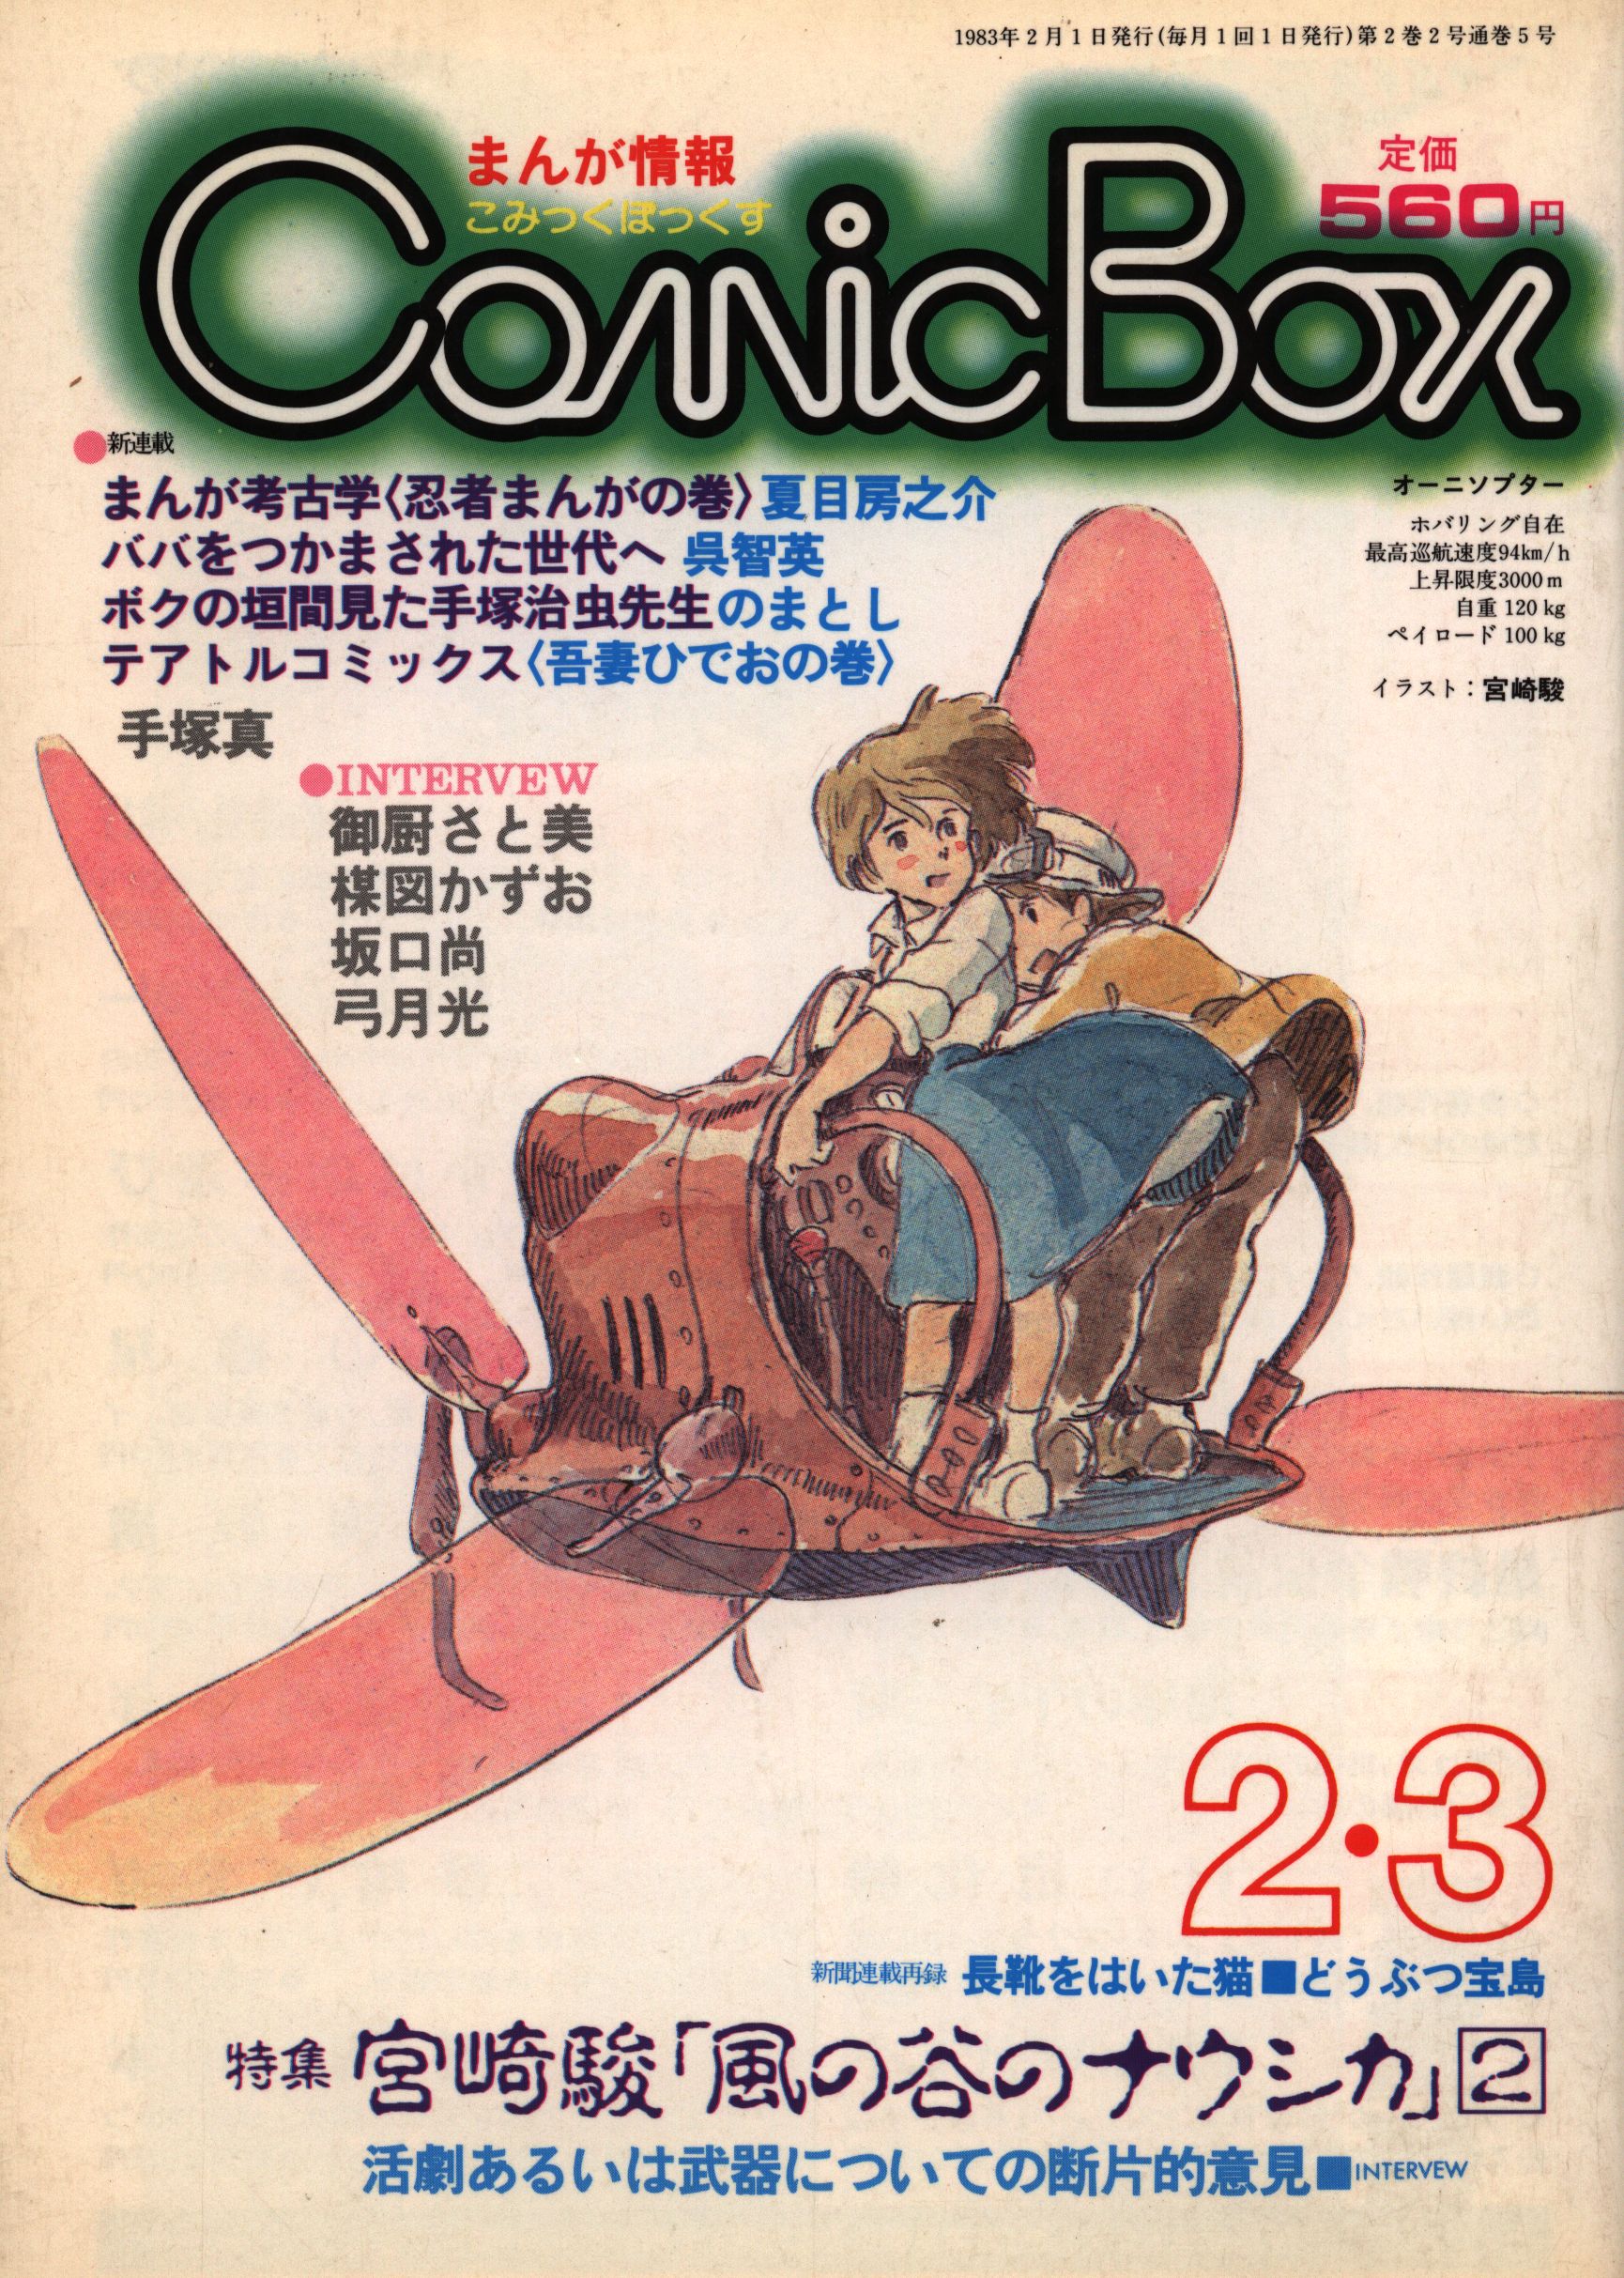 人気アイテム」 ComicBox コミックボックス 宮崎駿「風の谷のナウシカ